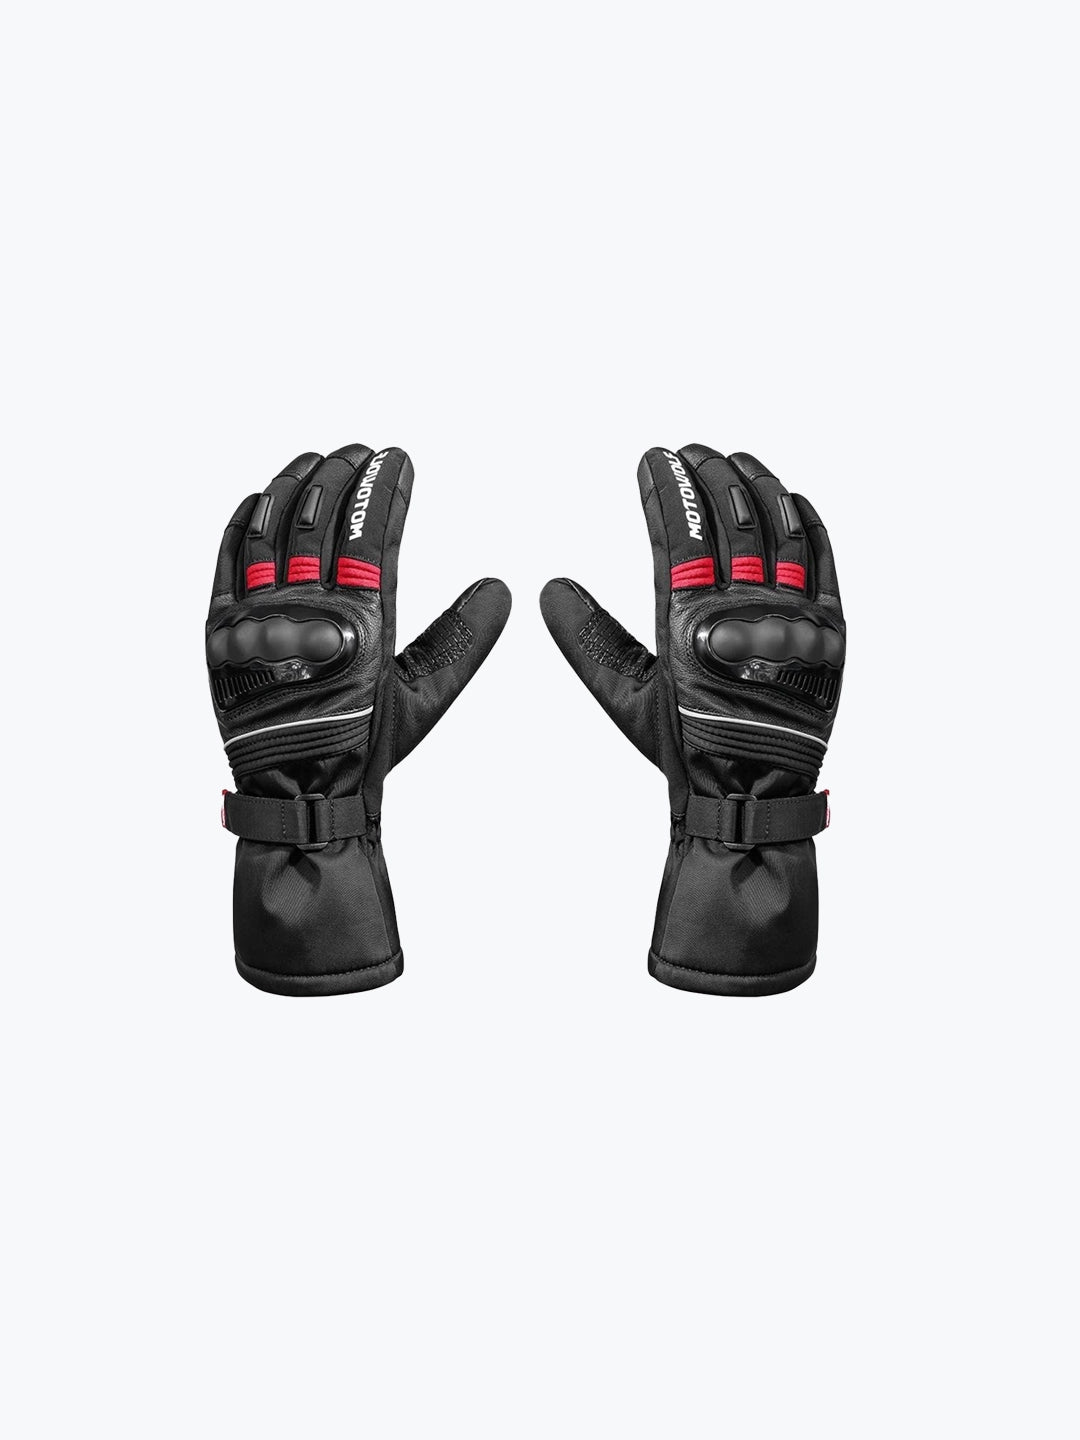 Motowolf Gloves Black Red 0318